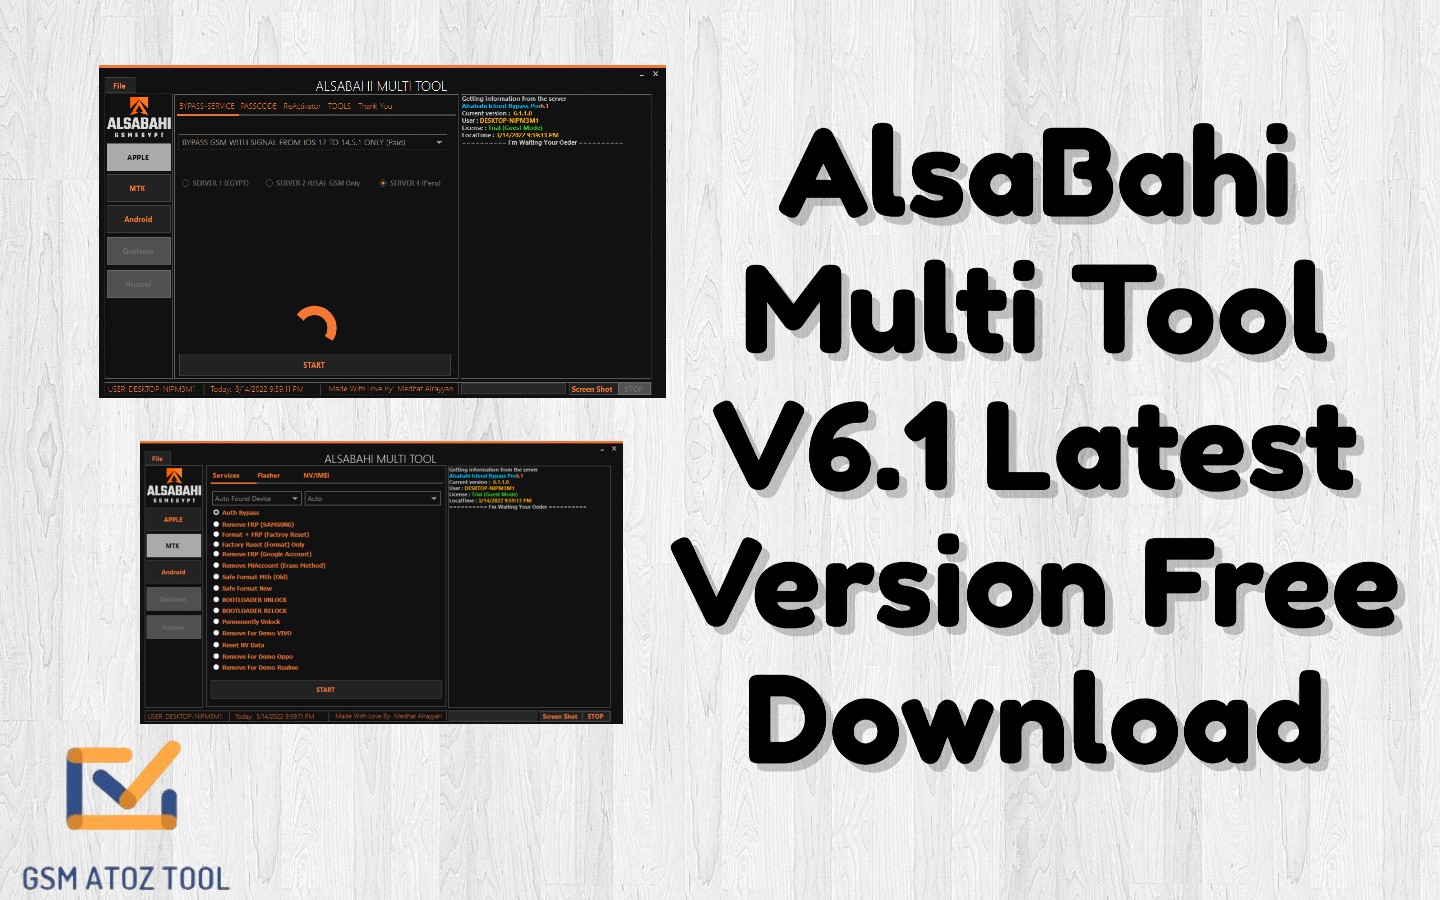 AlsaBahi Multi Tool V6.1 Latest Version Free Download